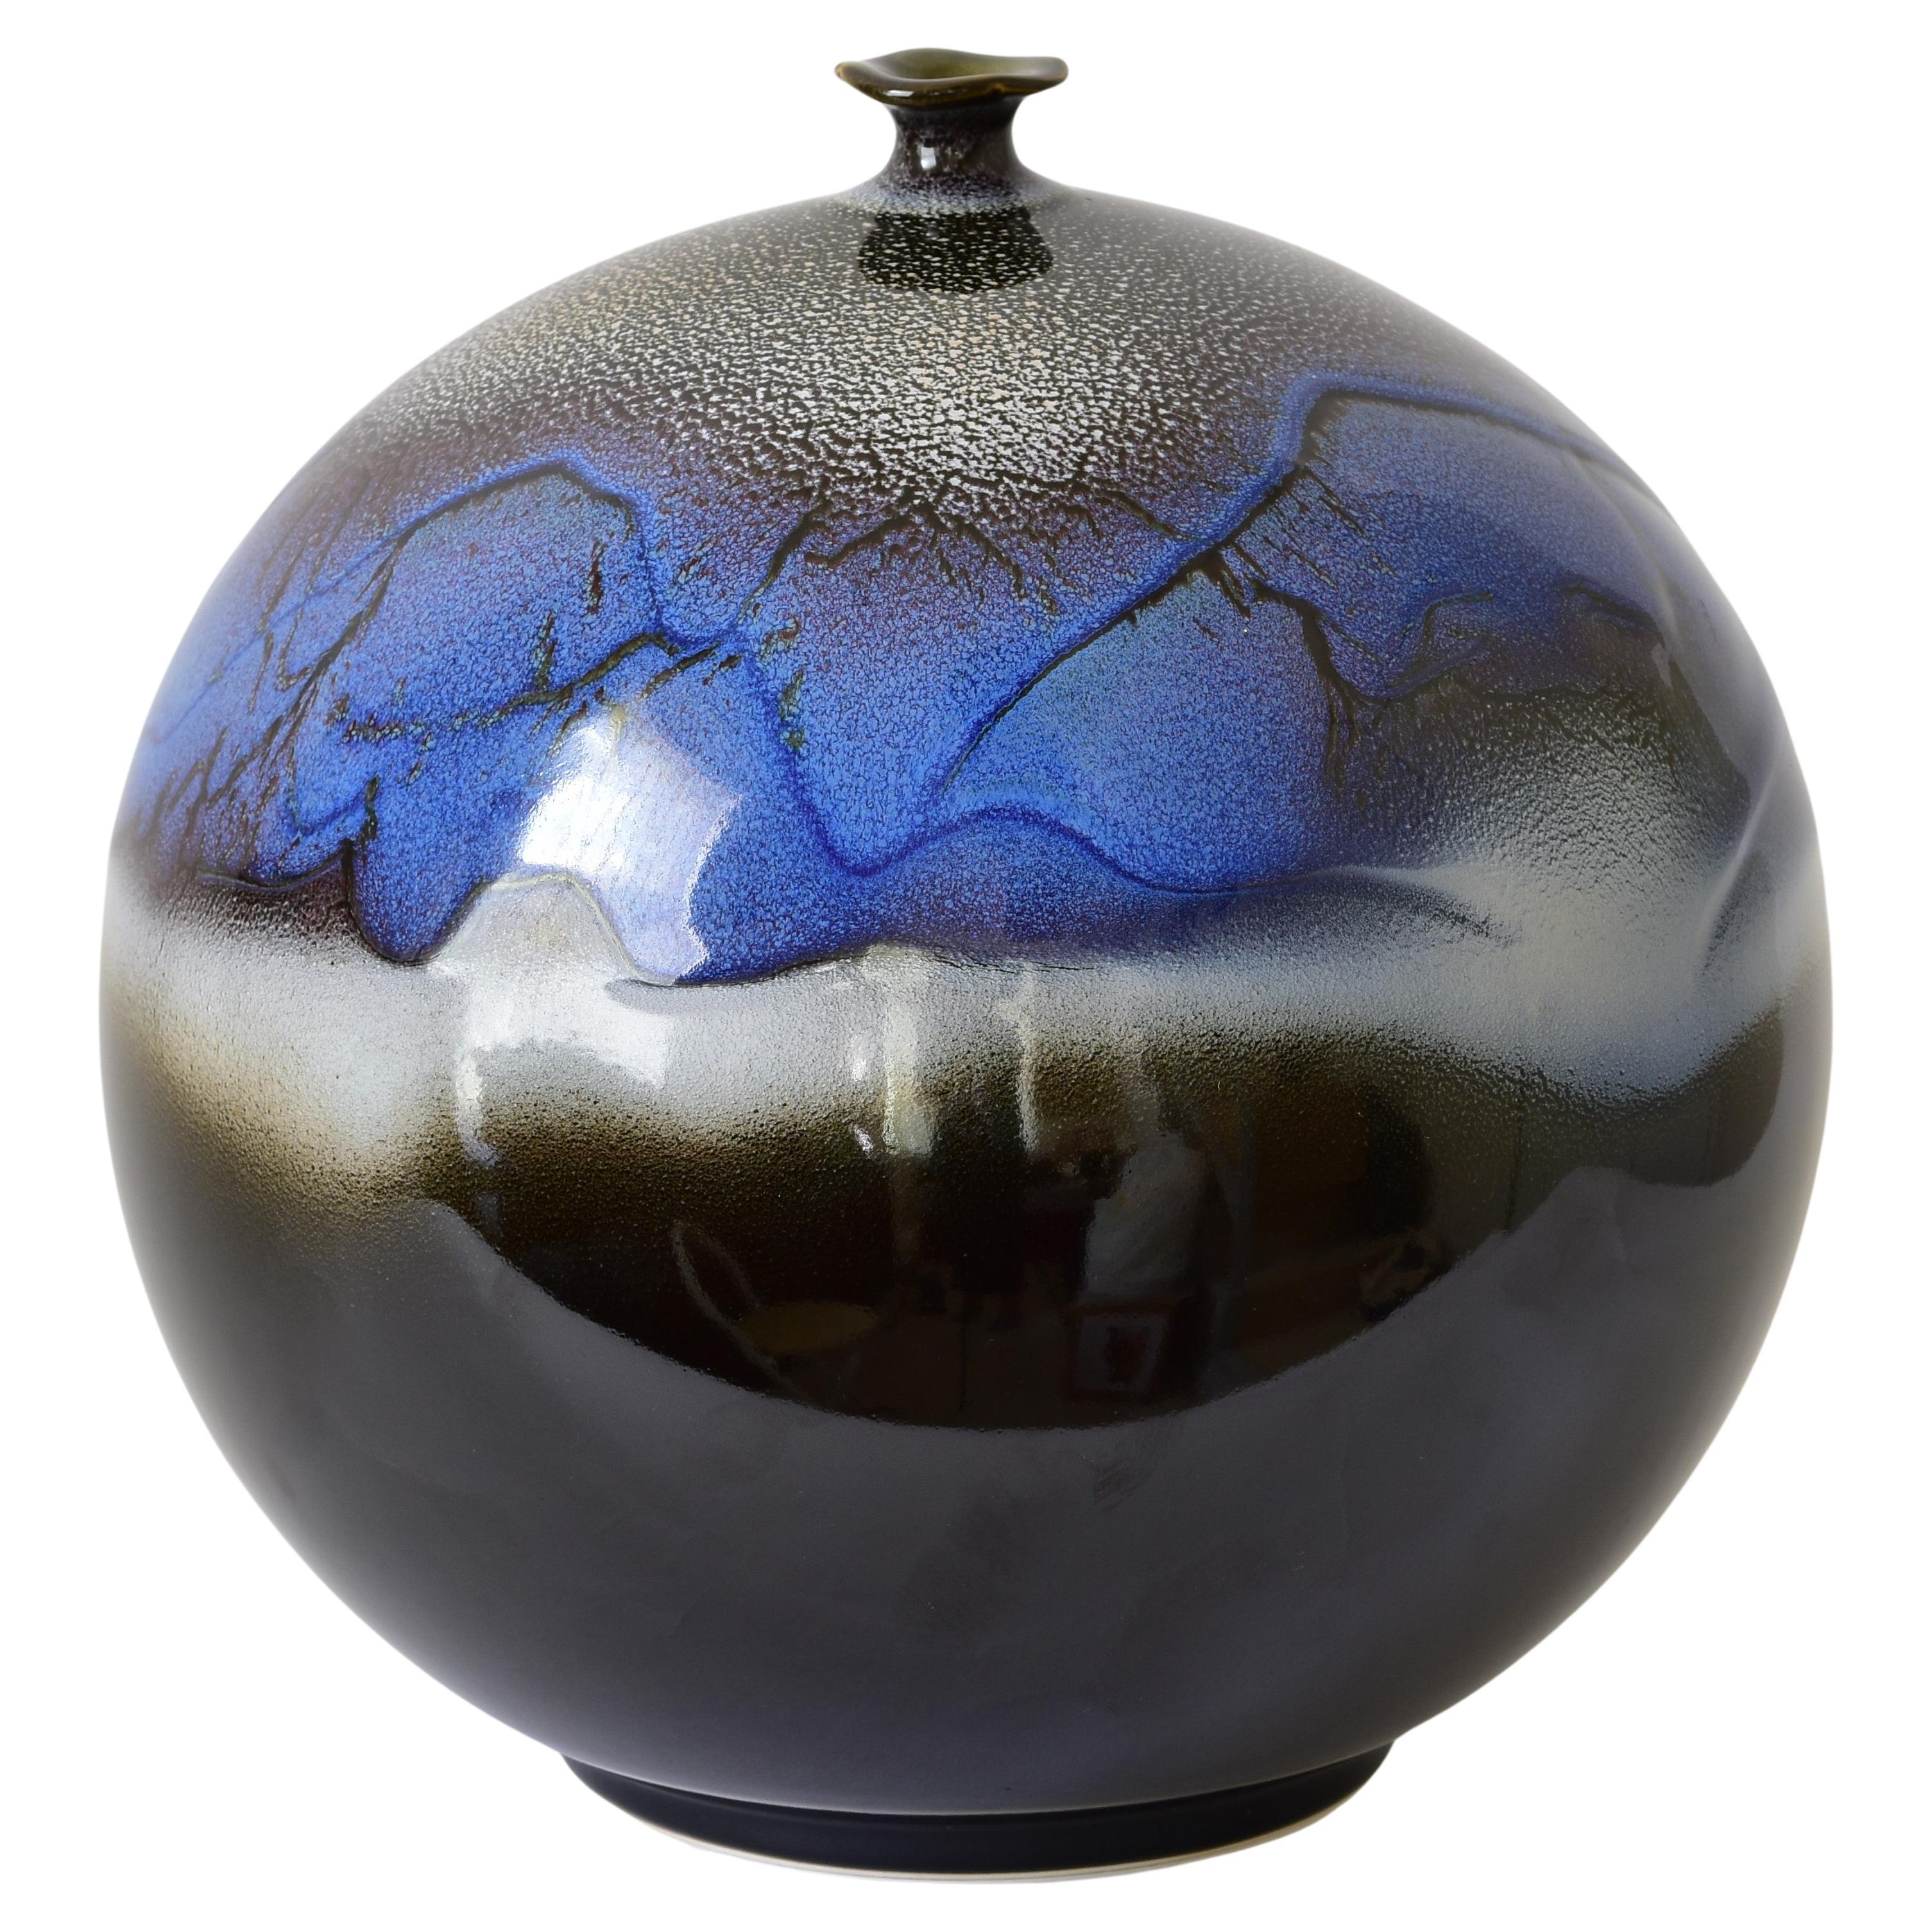 Japanese Contemporary Blue Black White Porcelain Vase by Master Artist